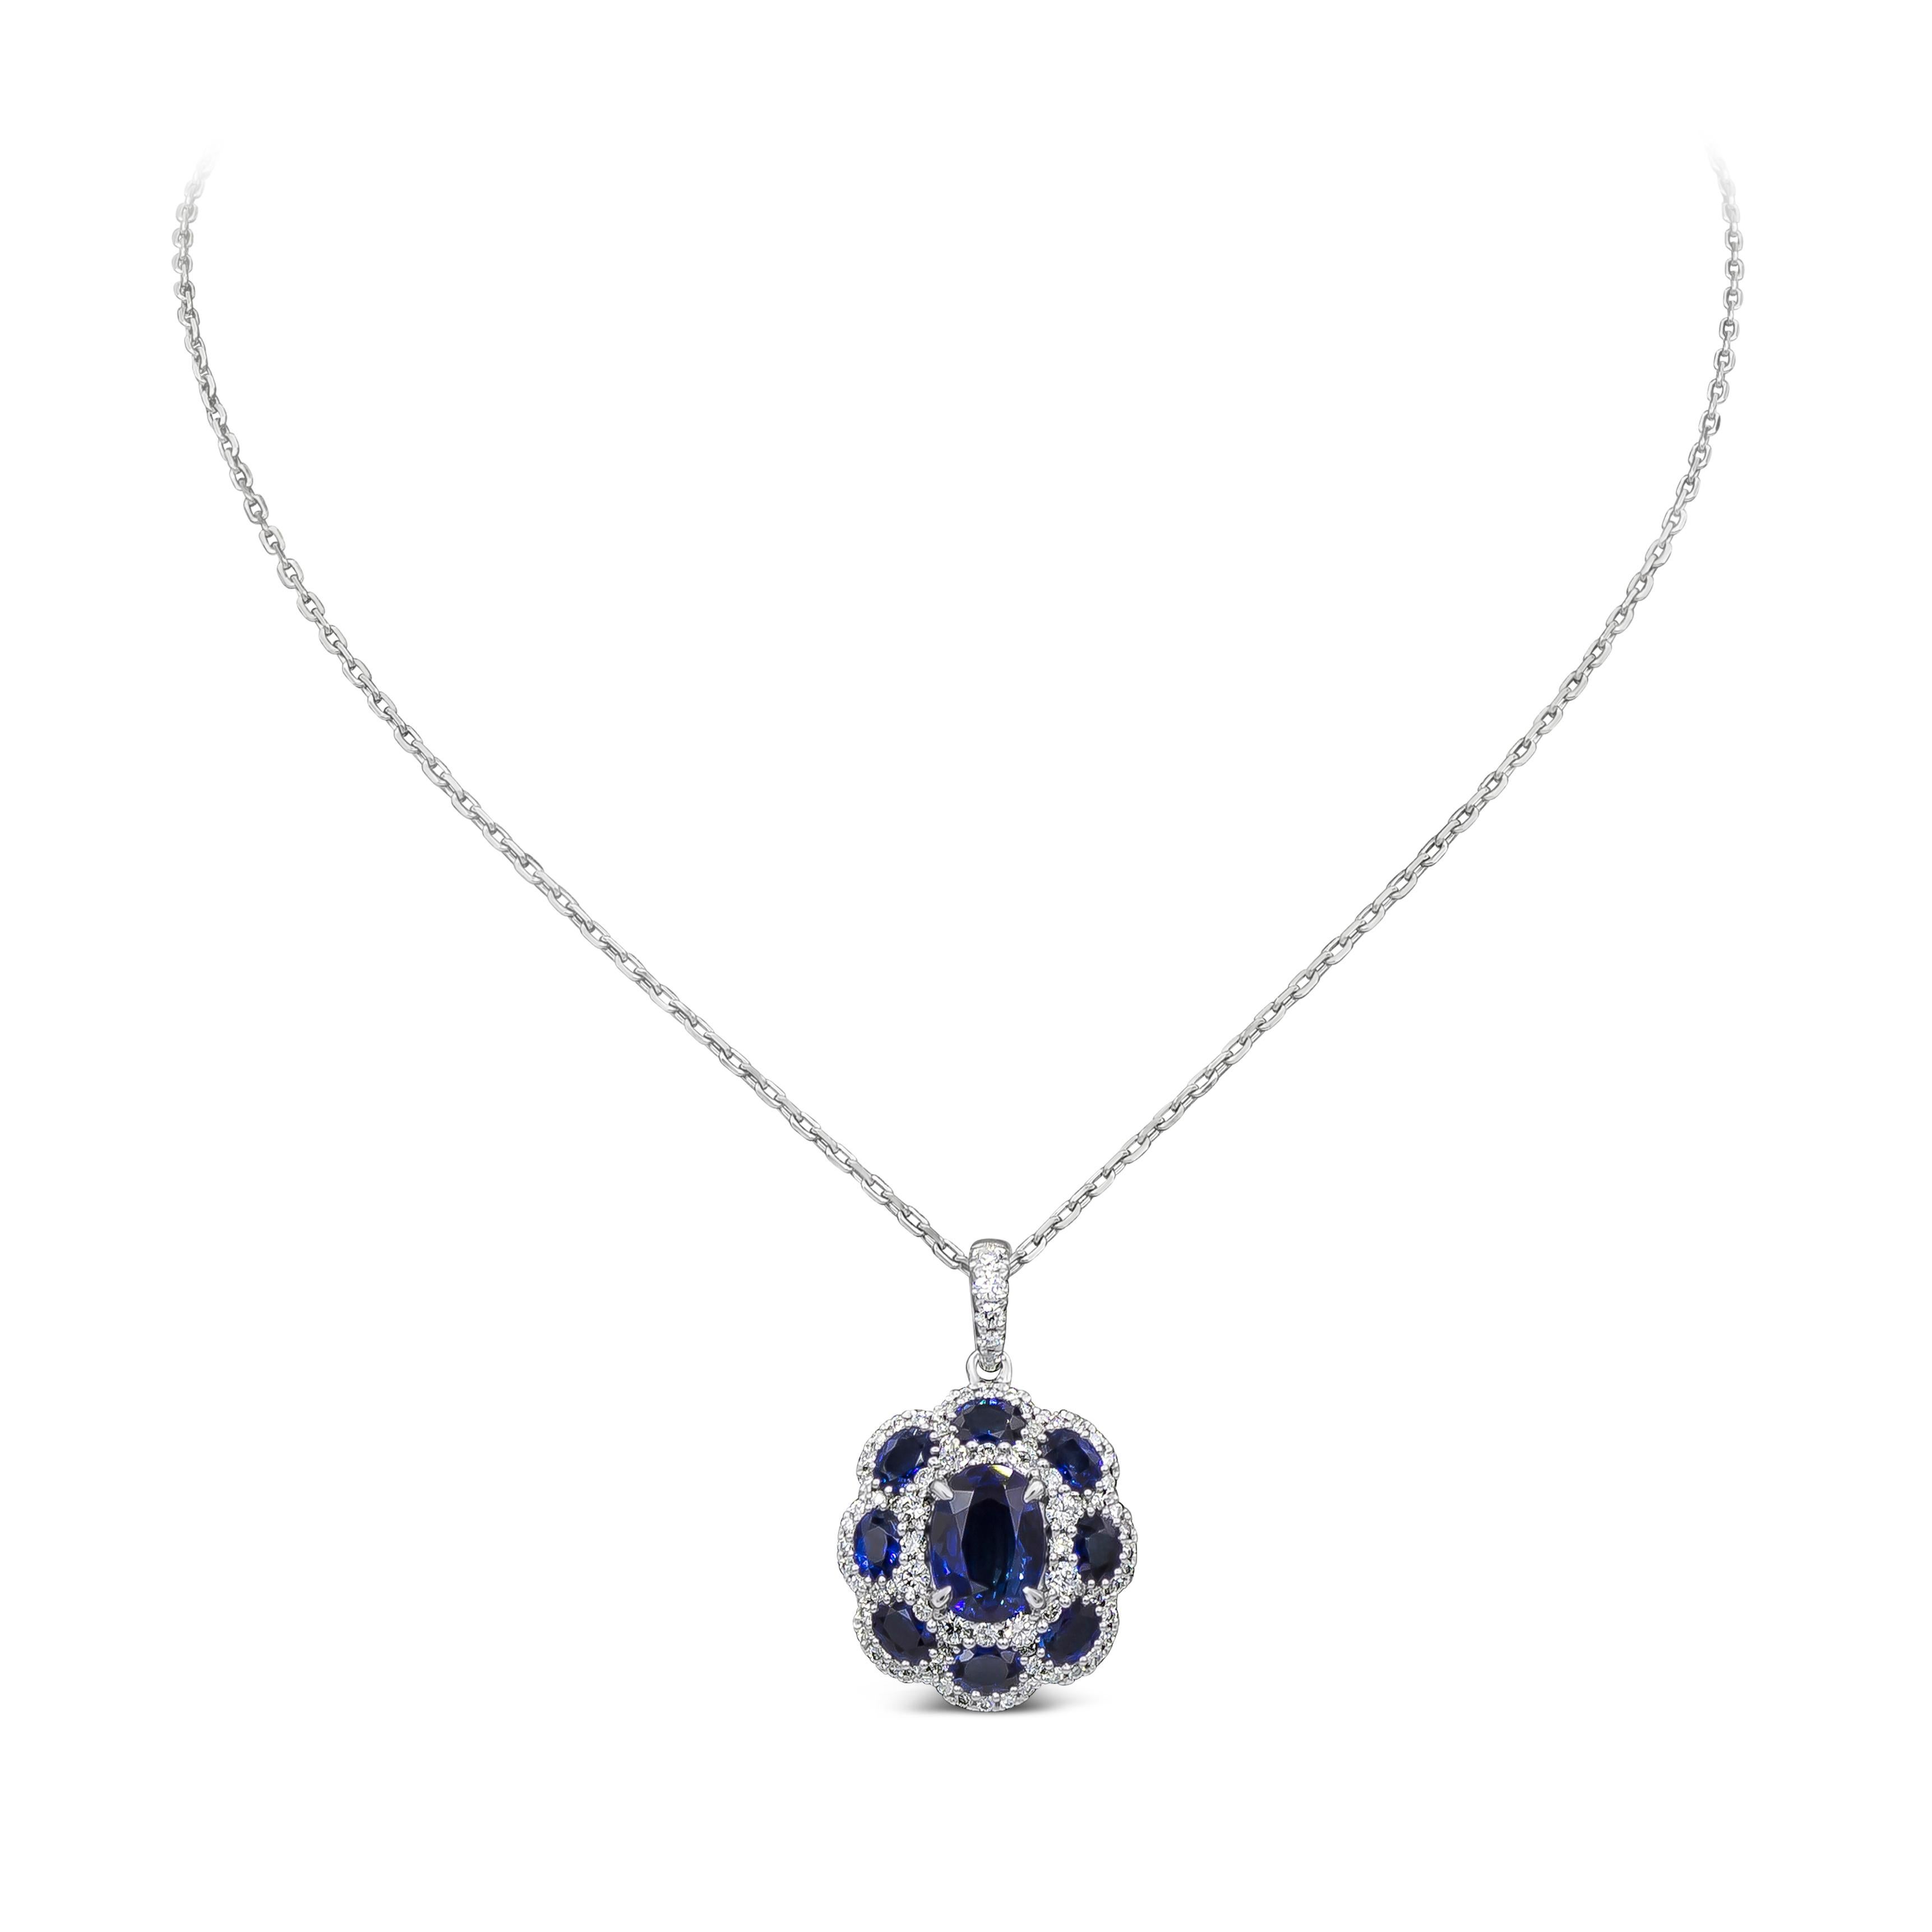 Ein modisches Schmuckstück mit einem blauen Saphir von 2,12 Karat im Ovalschliff in der Mitte, umgeben von kleineren blauen Saphiren von 1,76 Karat im Stil eines Blumenmotivs. Veredelt mit brillanten Diamantakzenten von insgesamt 0,68 Karat.